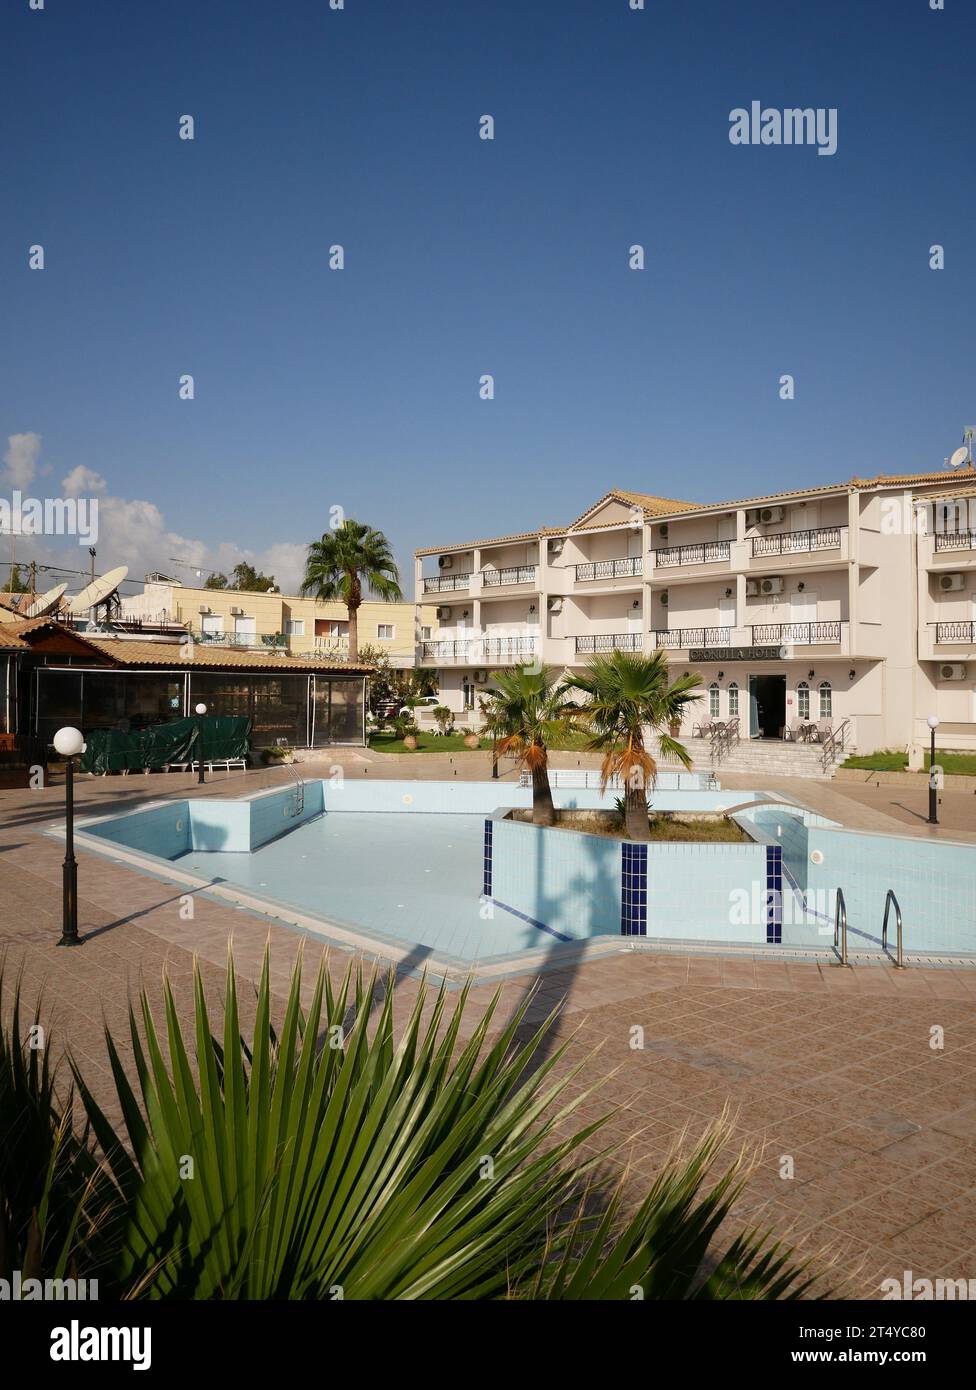 Am Ende der Sommerferien ist der Hotelpool leer. Kalamaki, Zakynthos, Griechenland. Stockfoto